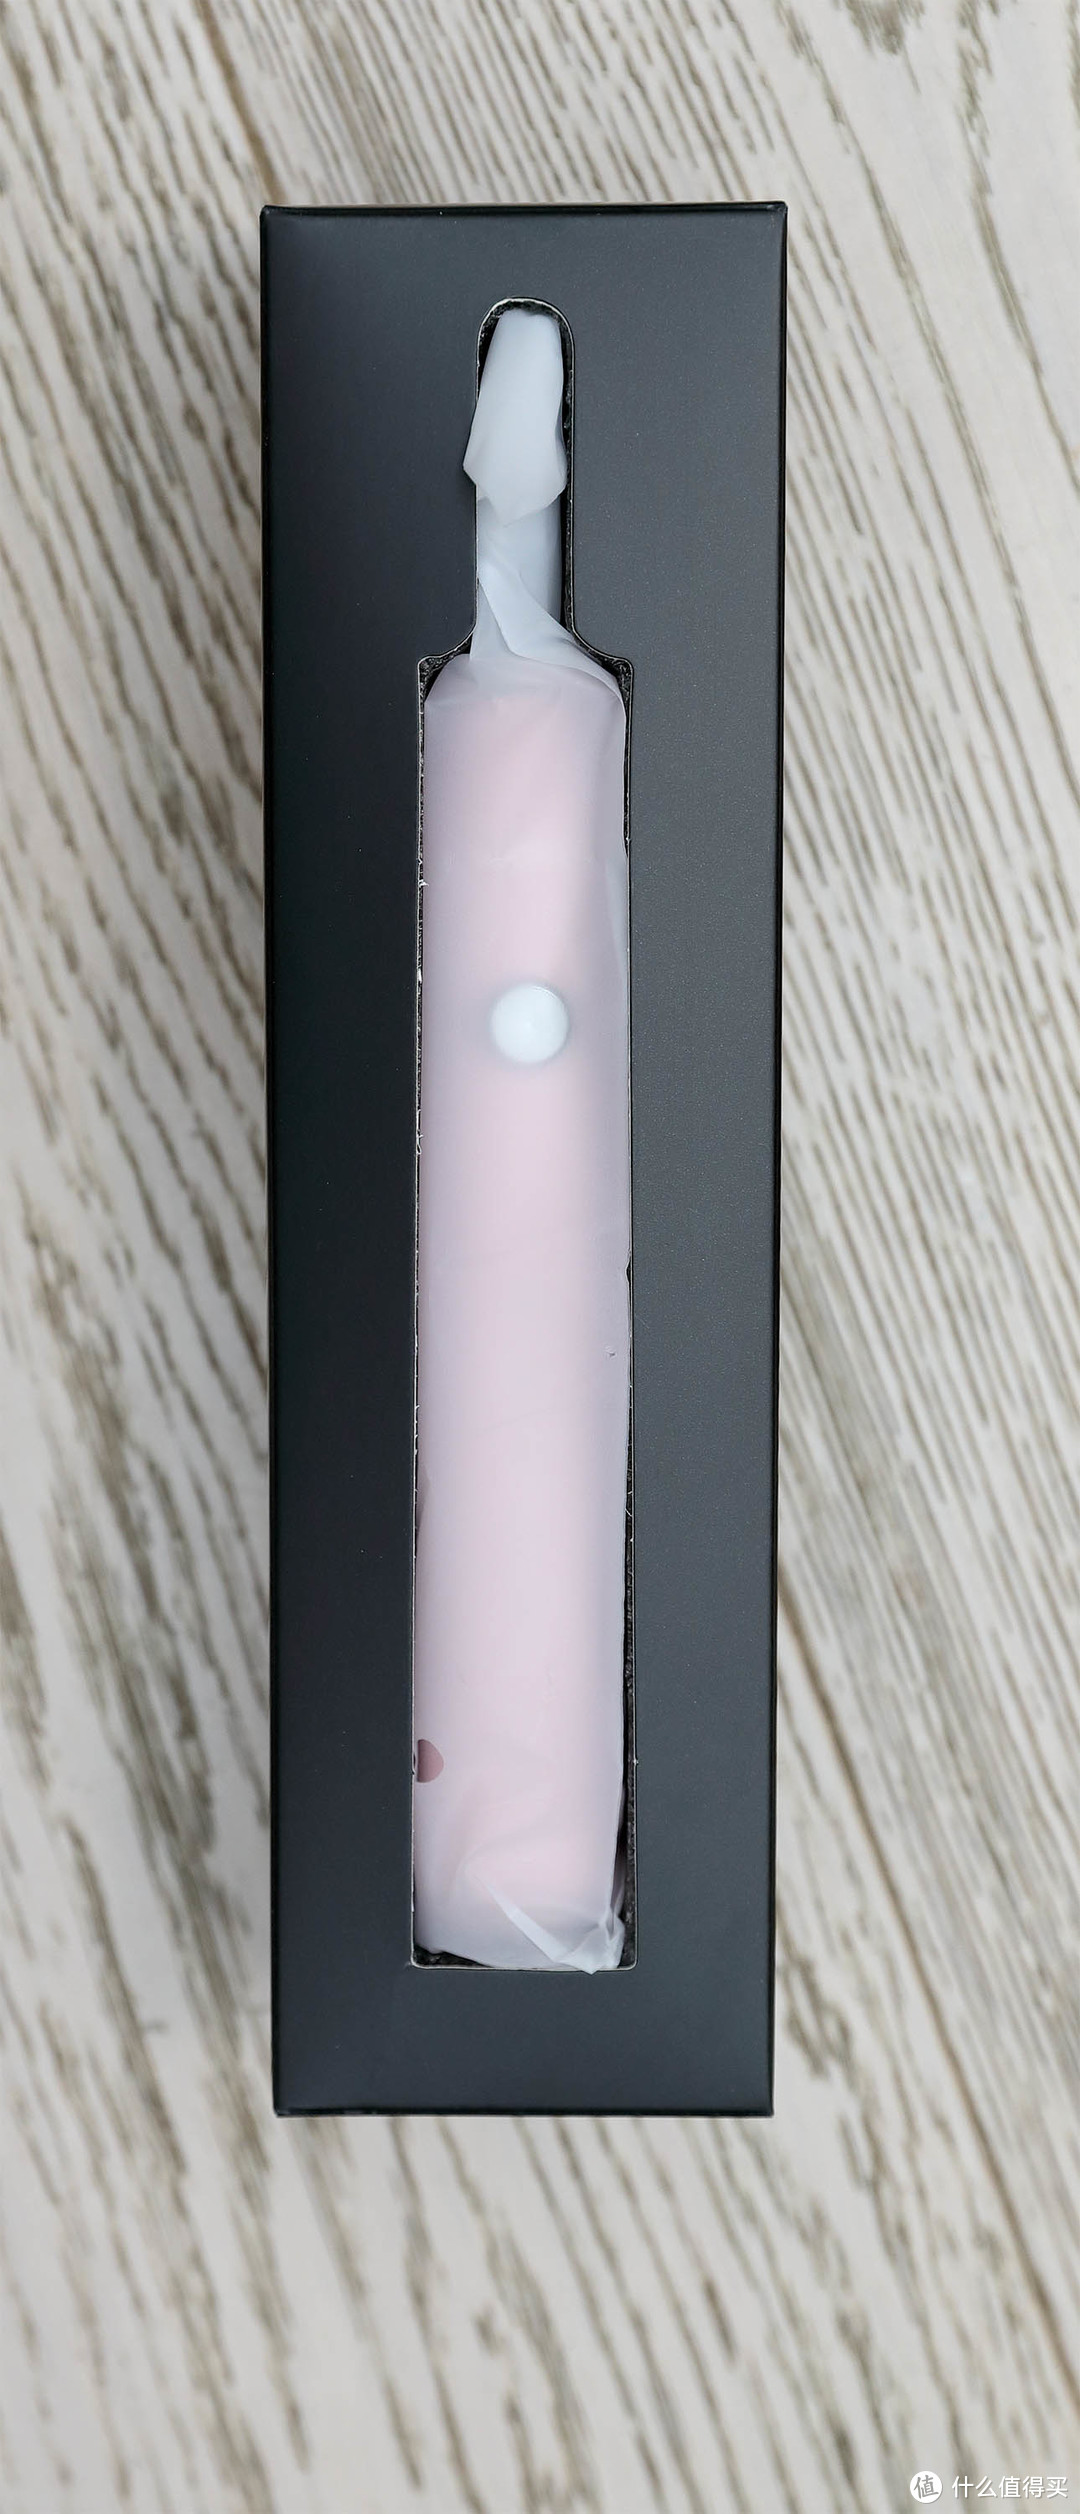 入门款电动牙刷——粉色YAKO 磁悬电动牙刷 O1轻体验